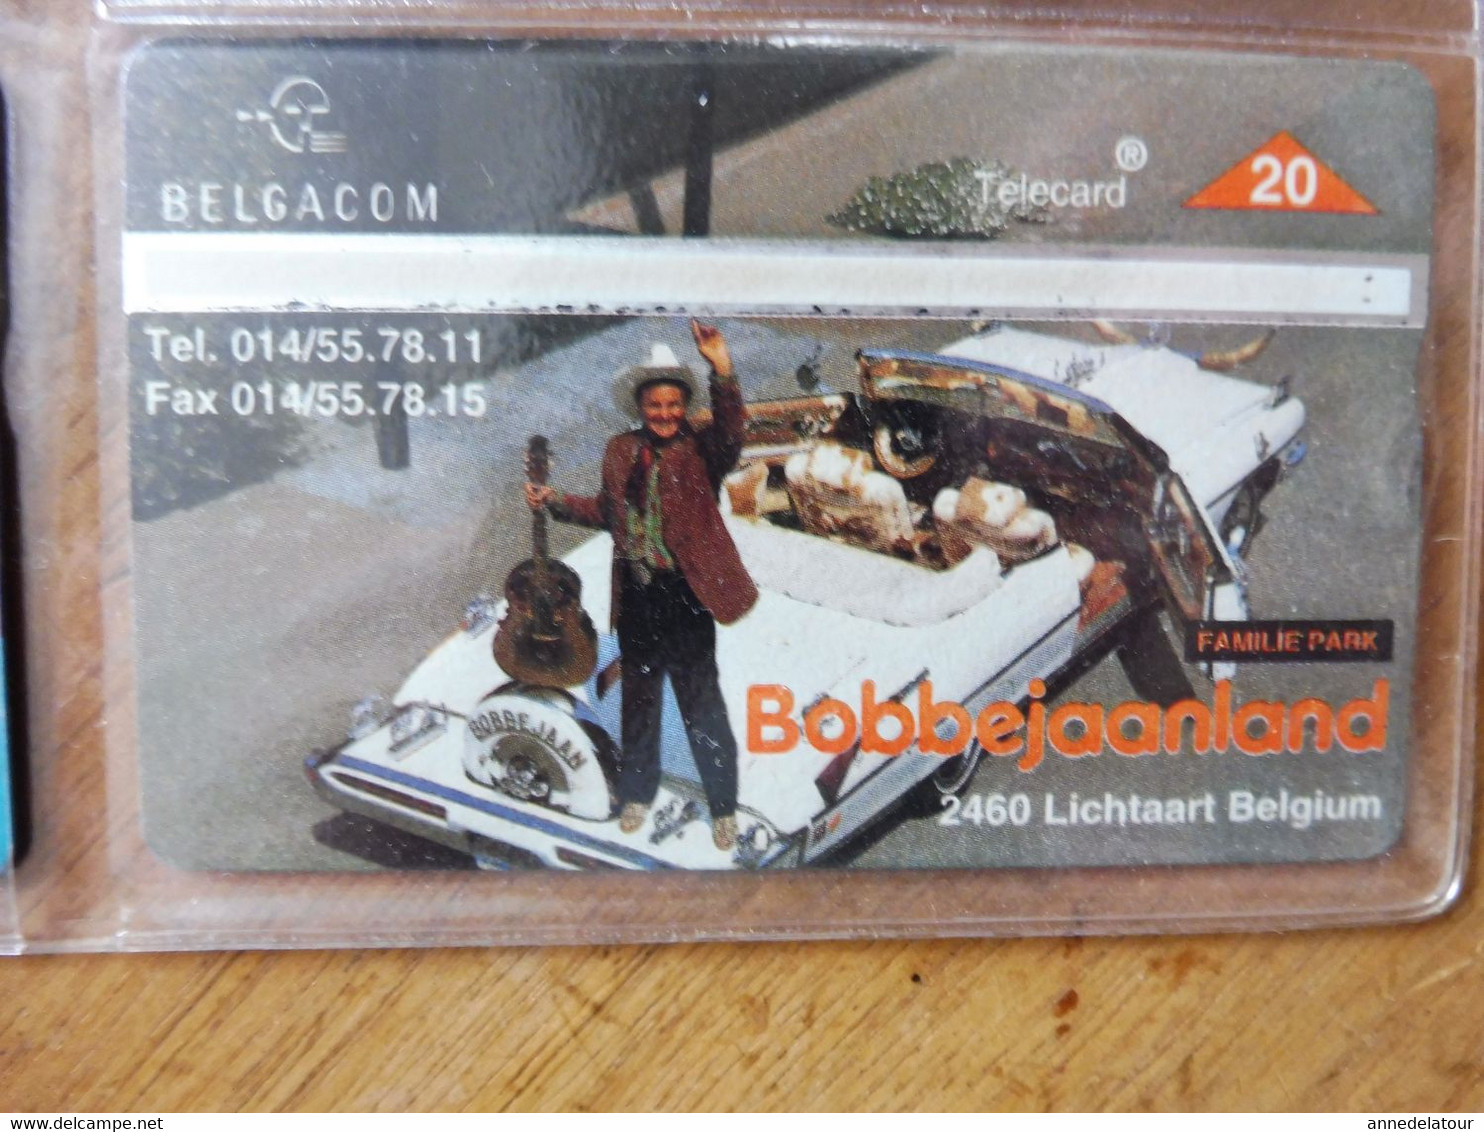 8 télécartes (cartes téléphoniques)  BELGACOM  avec (publicité ,Expo, Rock, Bobbejaanland,  etc)  Belgique